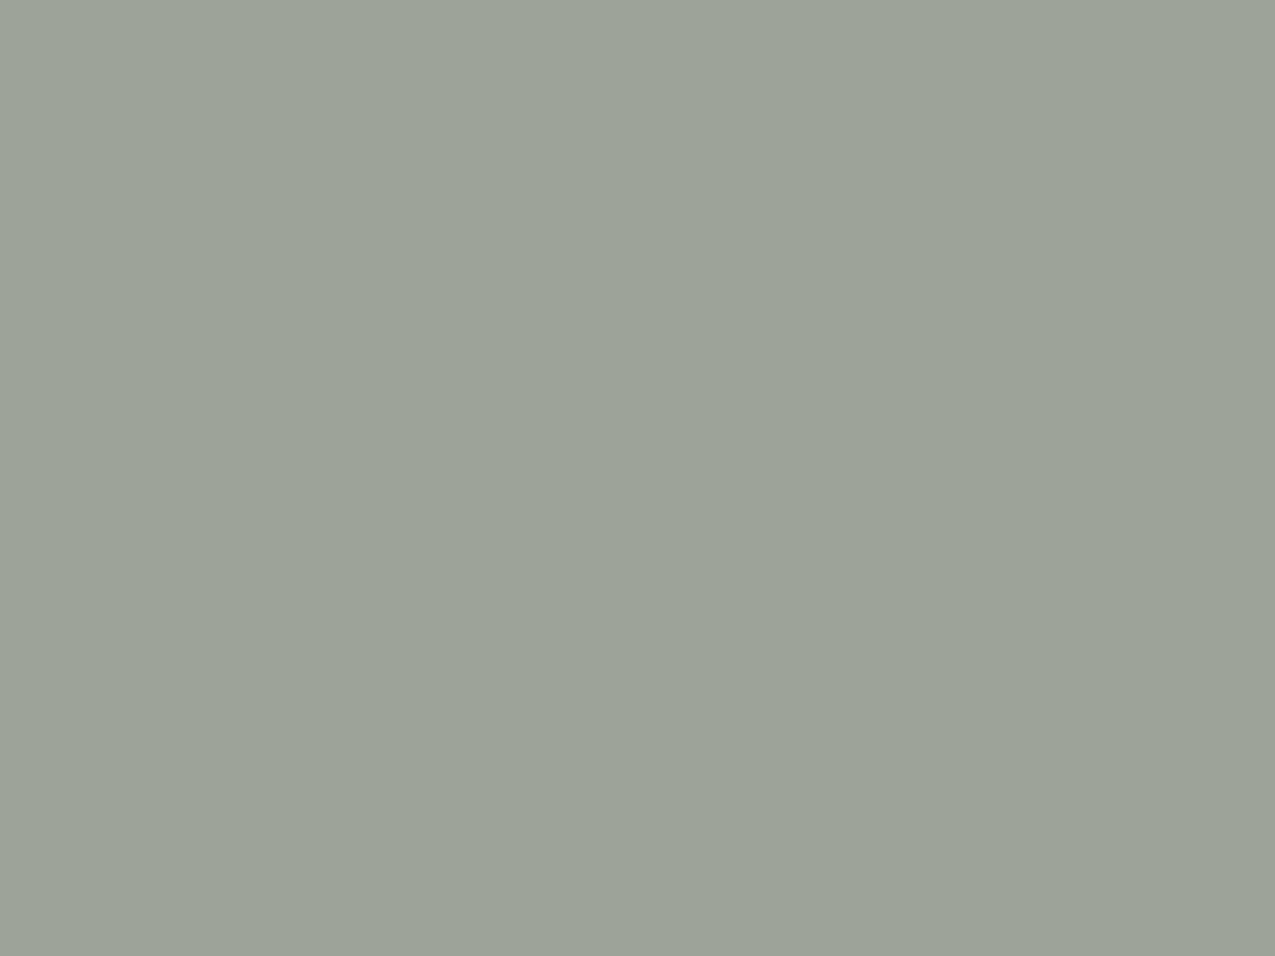 Исаак Левитан. Над вечным покоем (фрагмент). 1894. Государственная Третьяковская галерея, Москва